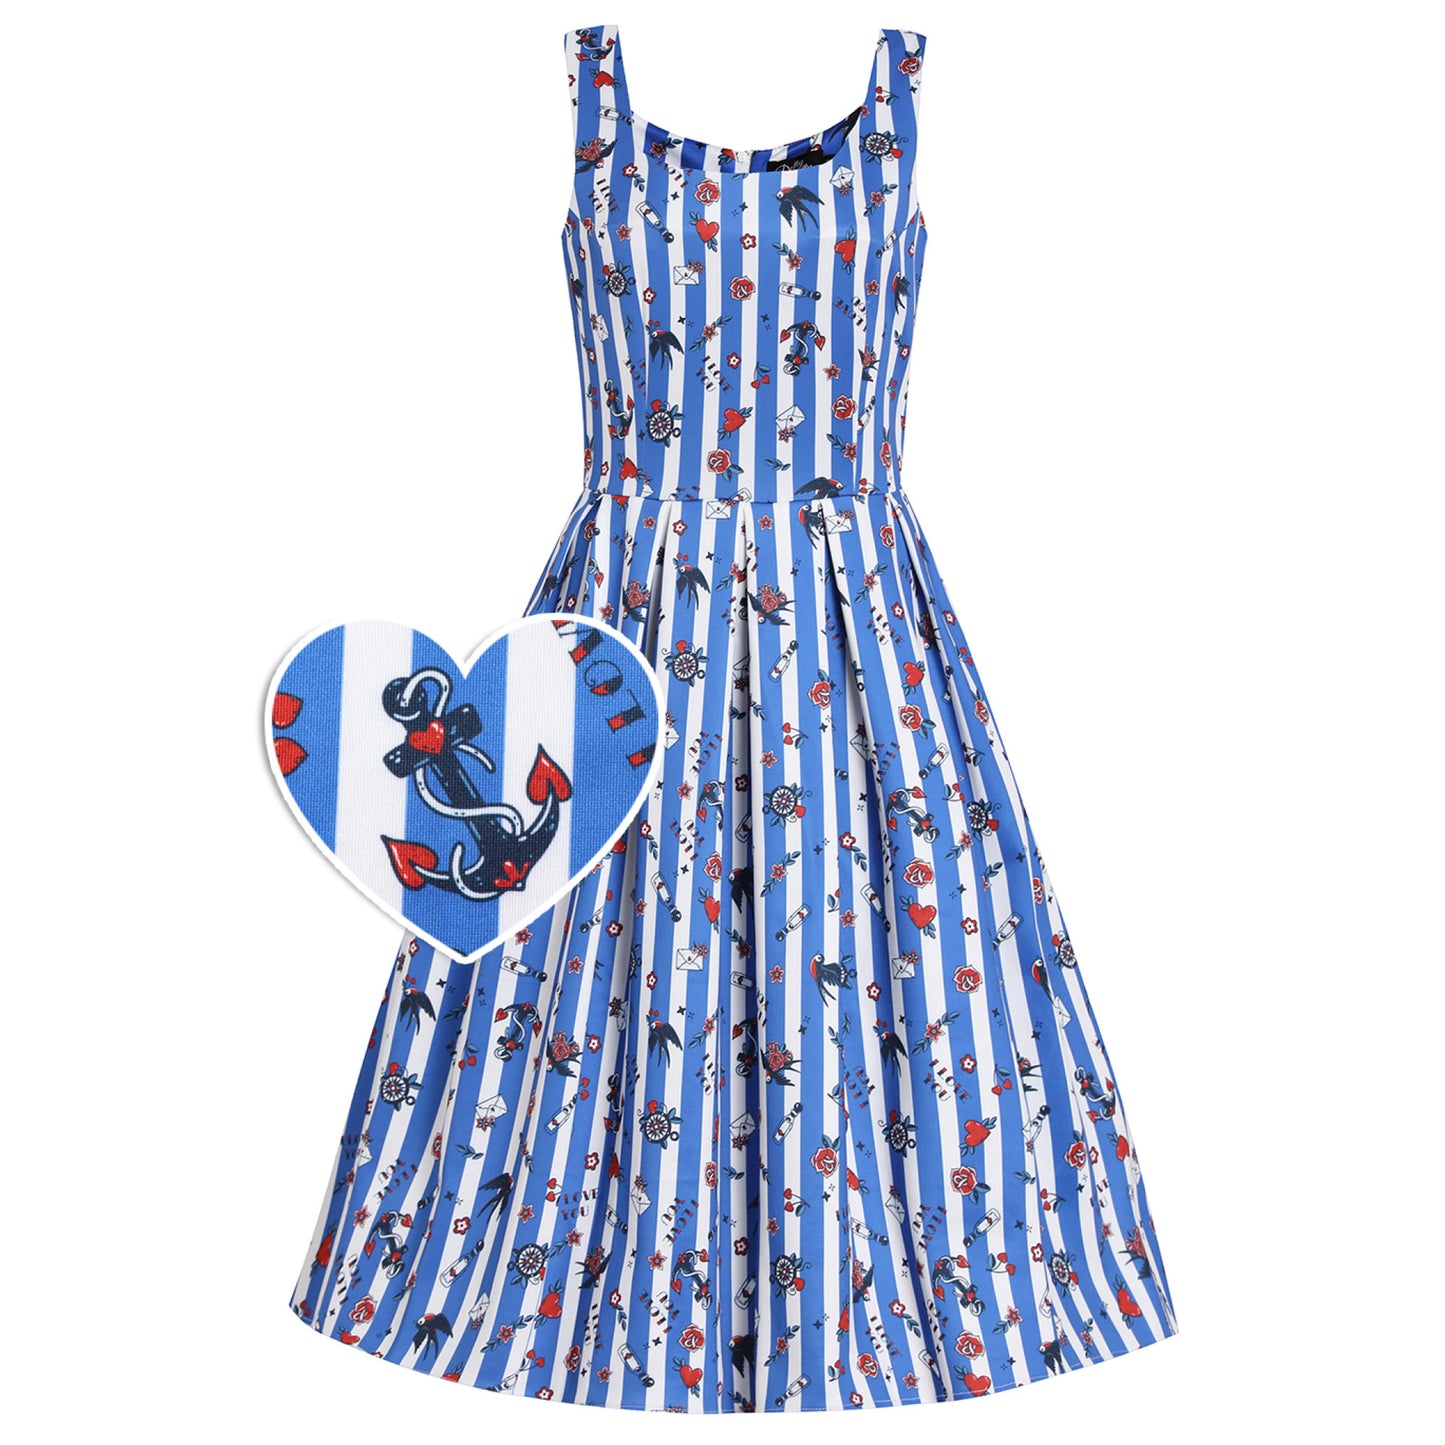 Blue Striped Old School Rockabilly Dress